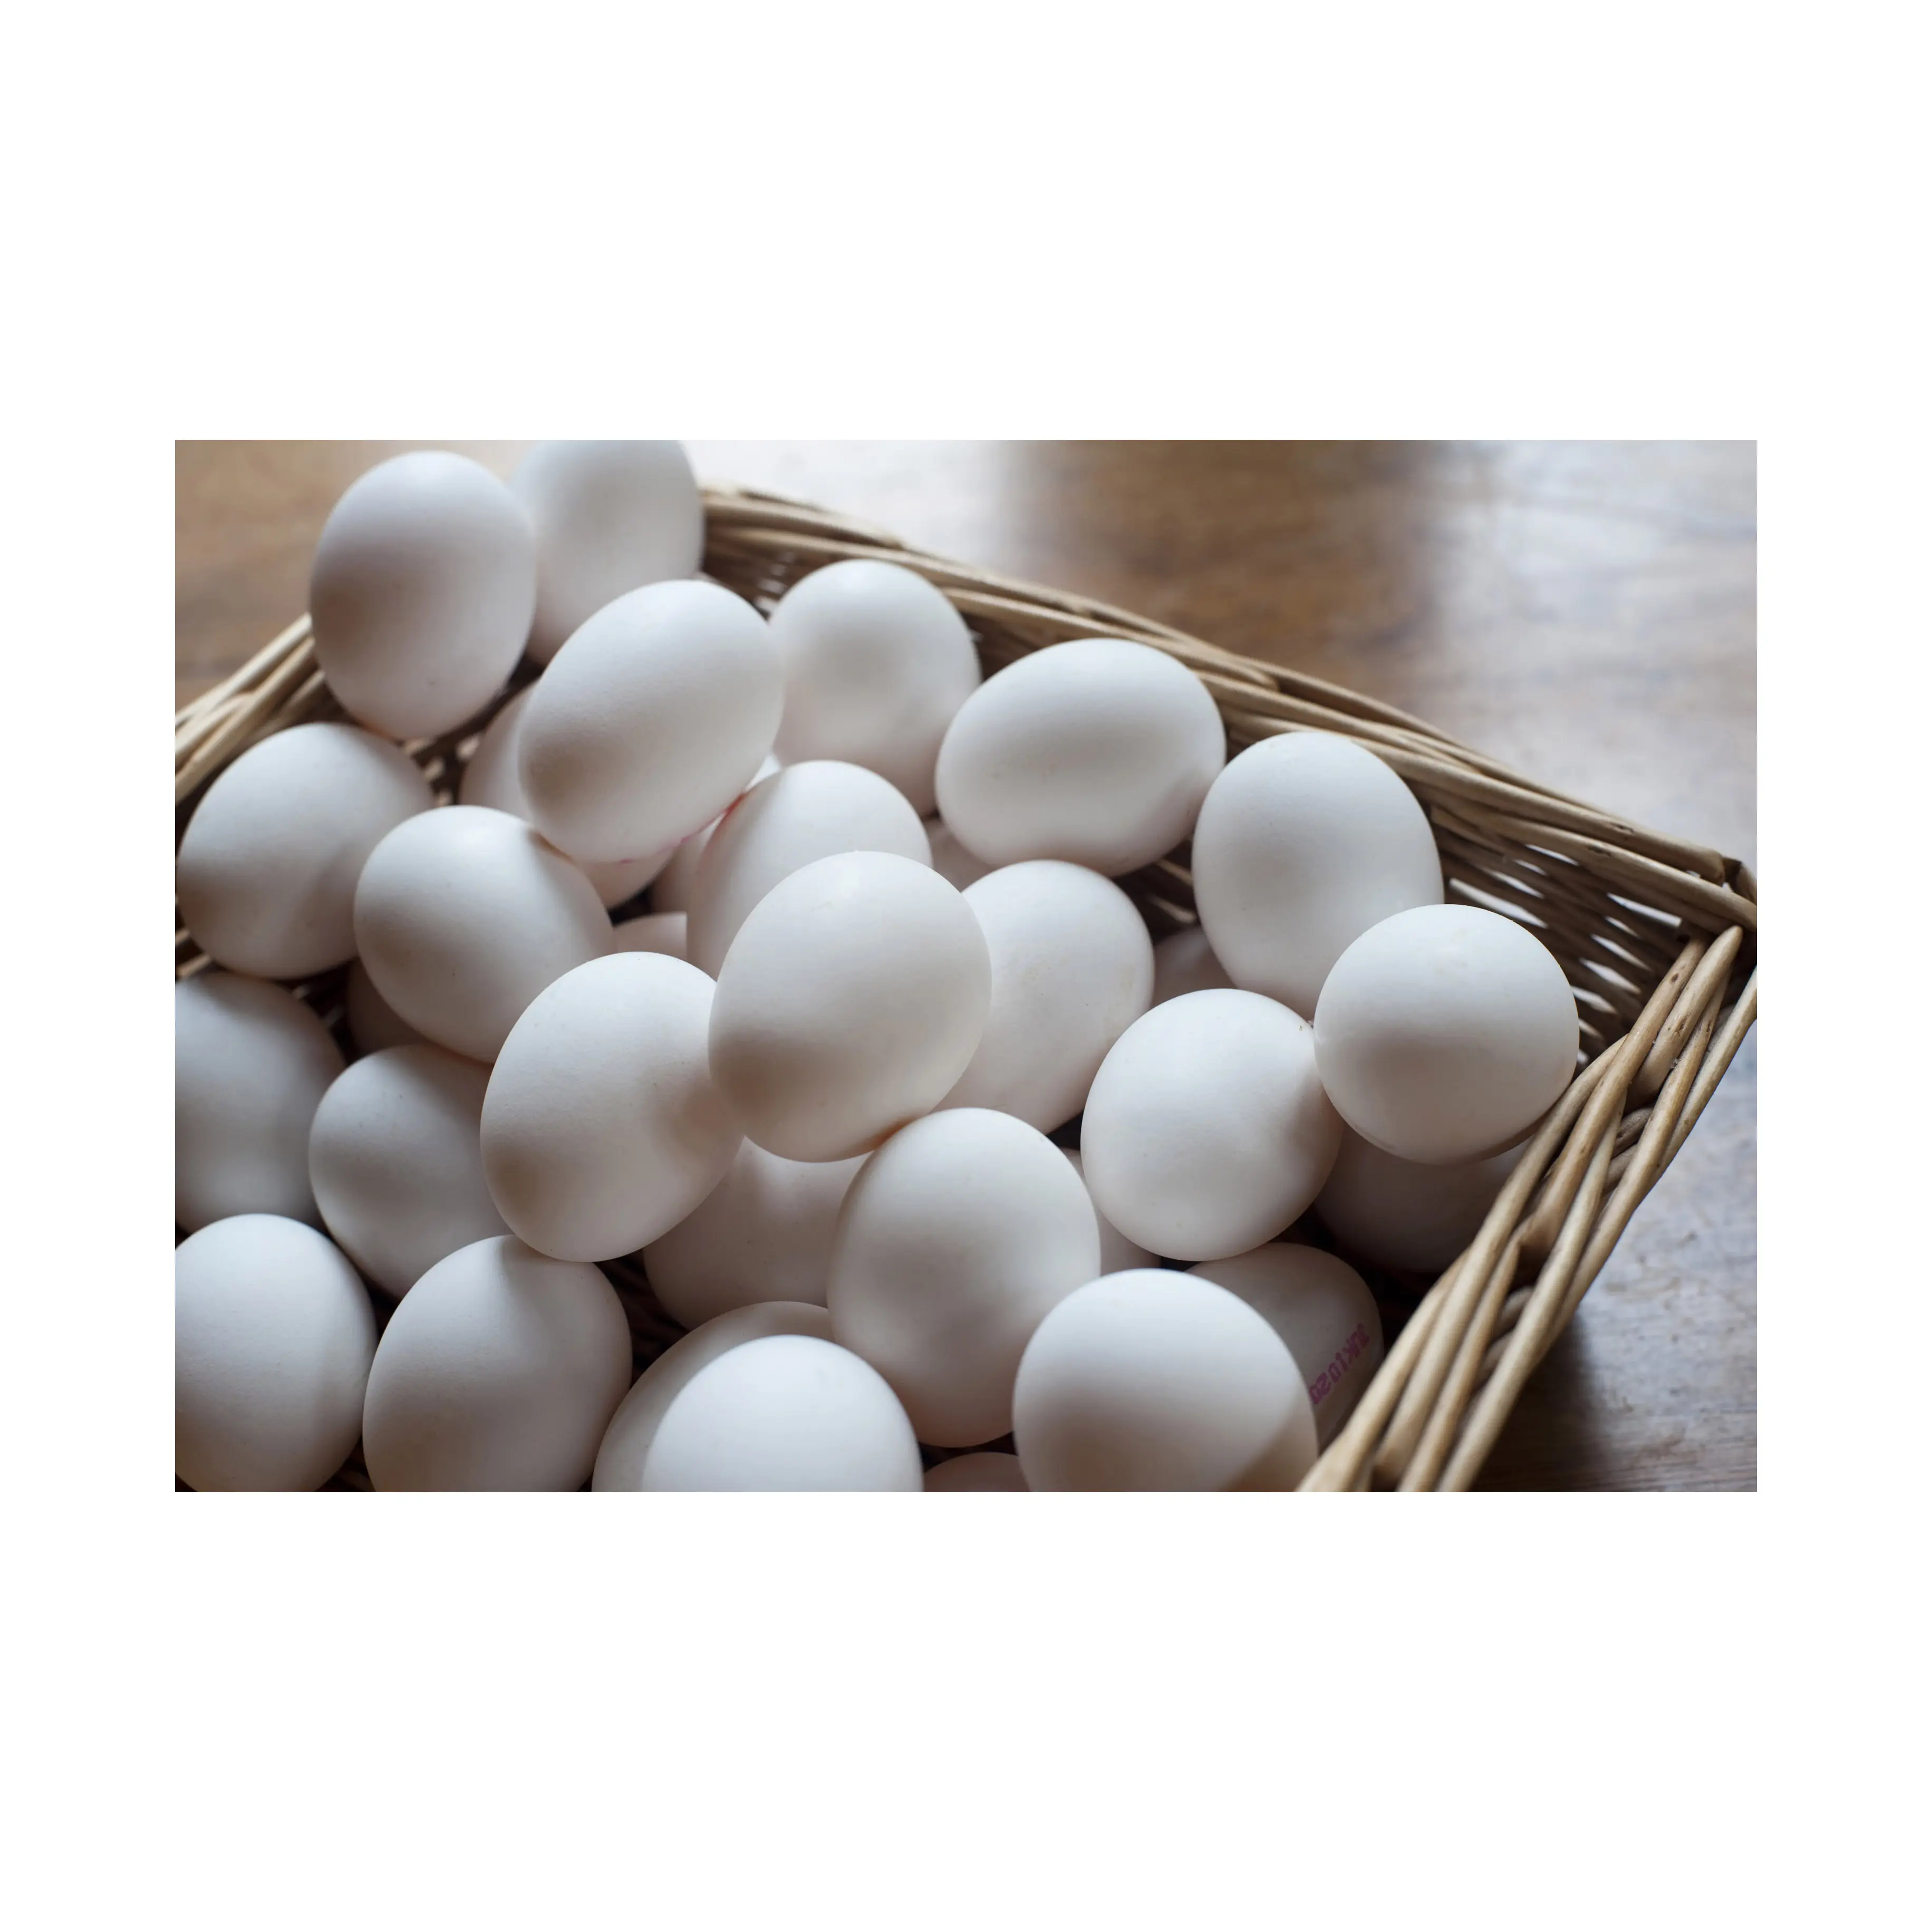 Hochstandard QualitÄt Huhnenei frische und natürliche Eier Großhandelspreis Tierprodukte Eier